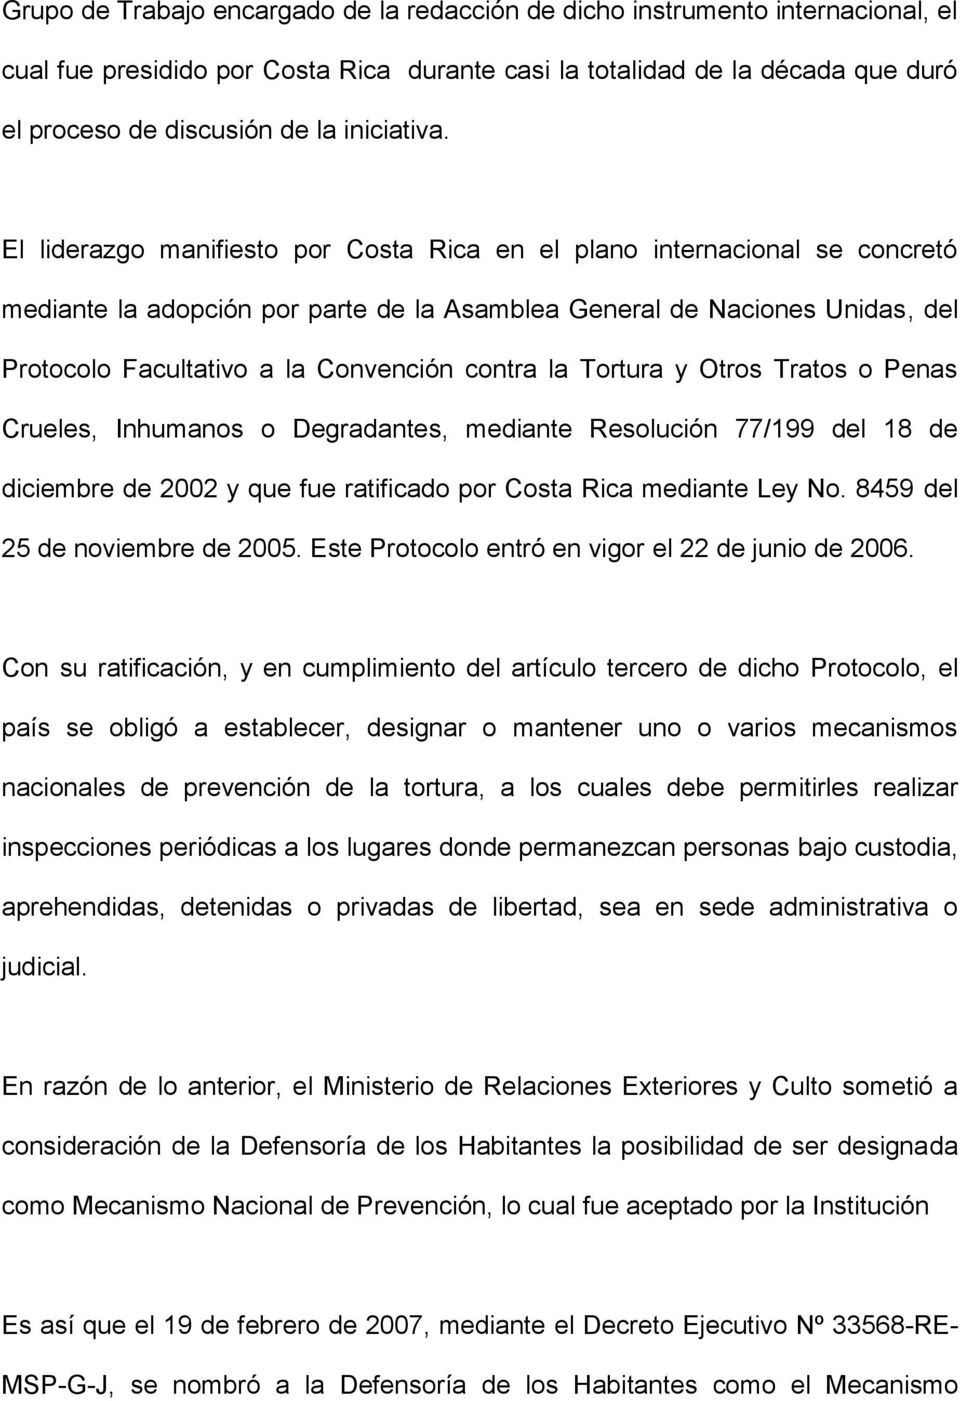 El liderazgo manifiesto por Costa Rica en el plano internacional se concretó mediante la adopción por parte de la Asamblea General de Naciones Unidas, del Protocolo Facultativo a la Convención contra